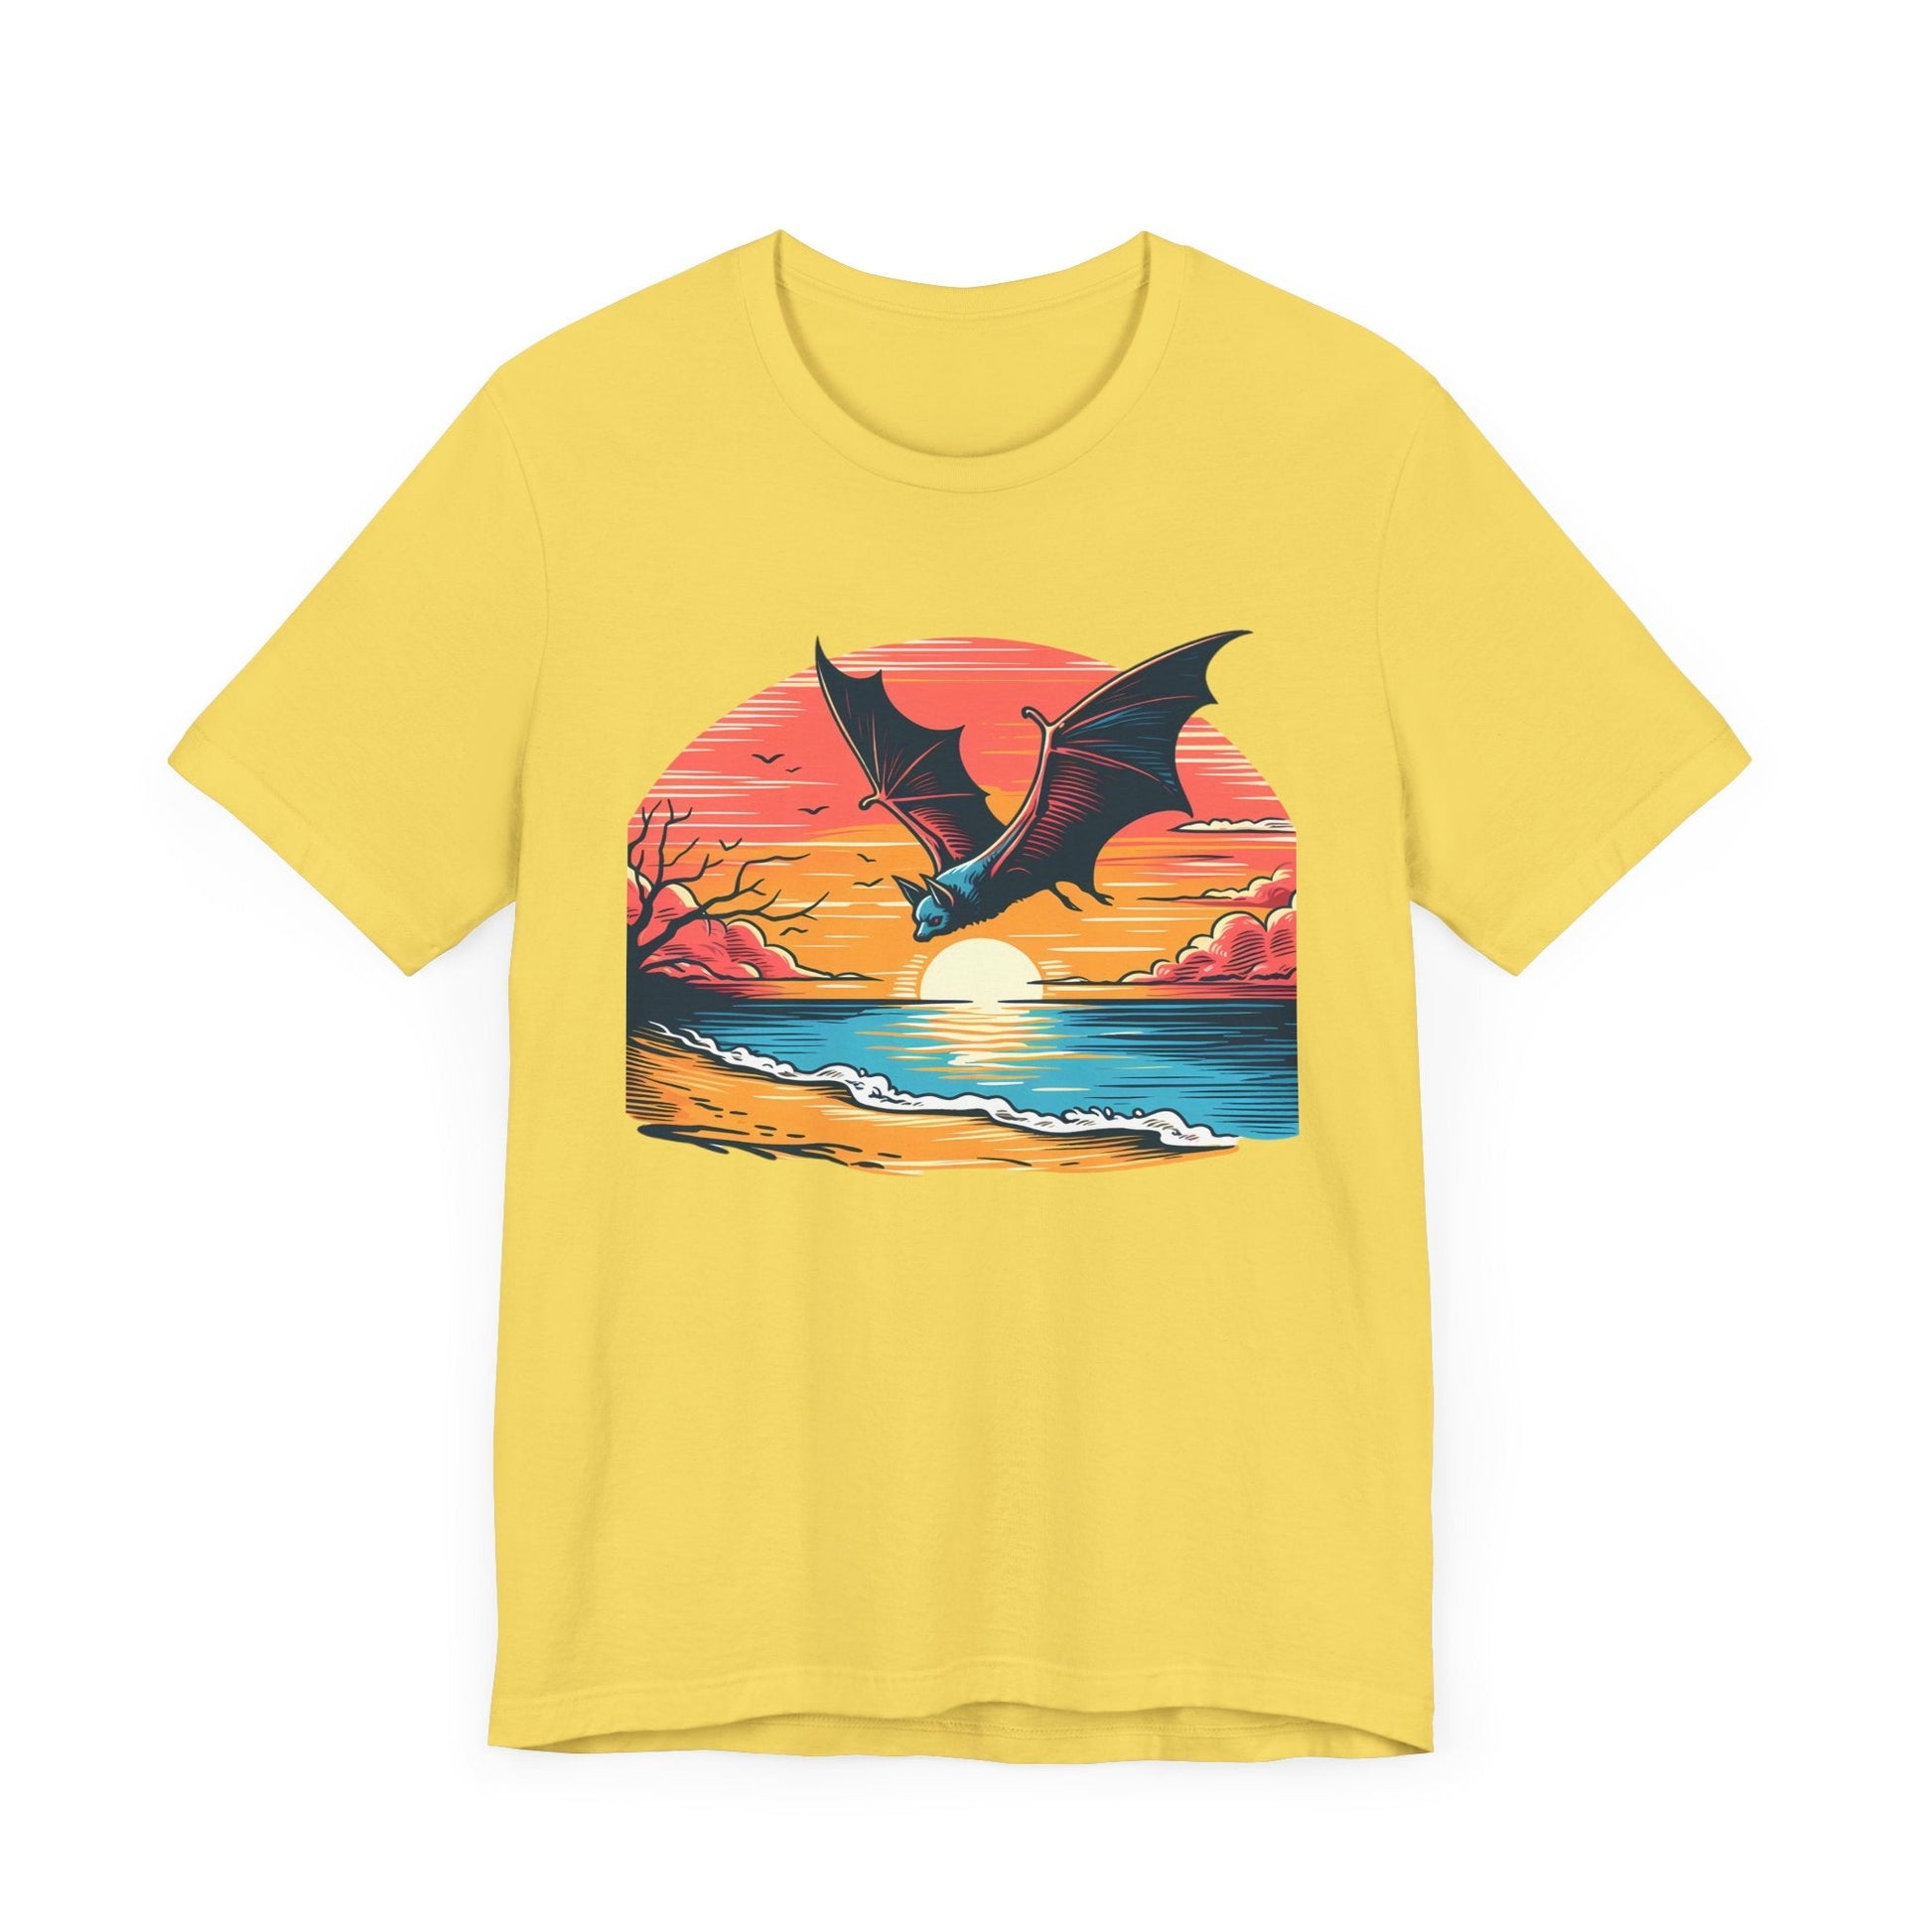 Sunset Bat Short Sleeve Tee ShirtT - ShirtVTZdesignsMaize YellowXSCottonCrew neckDTG